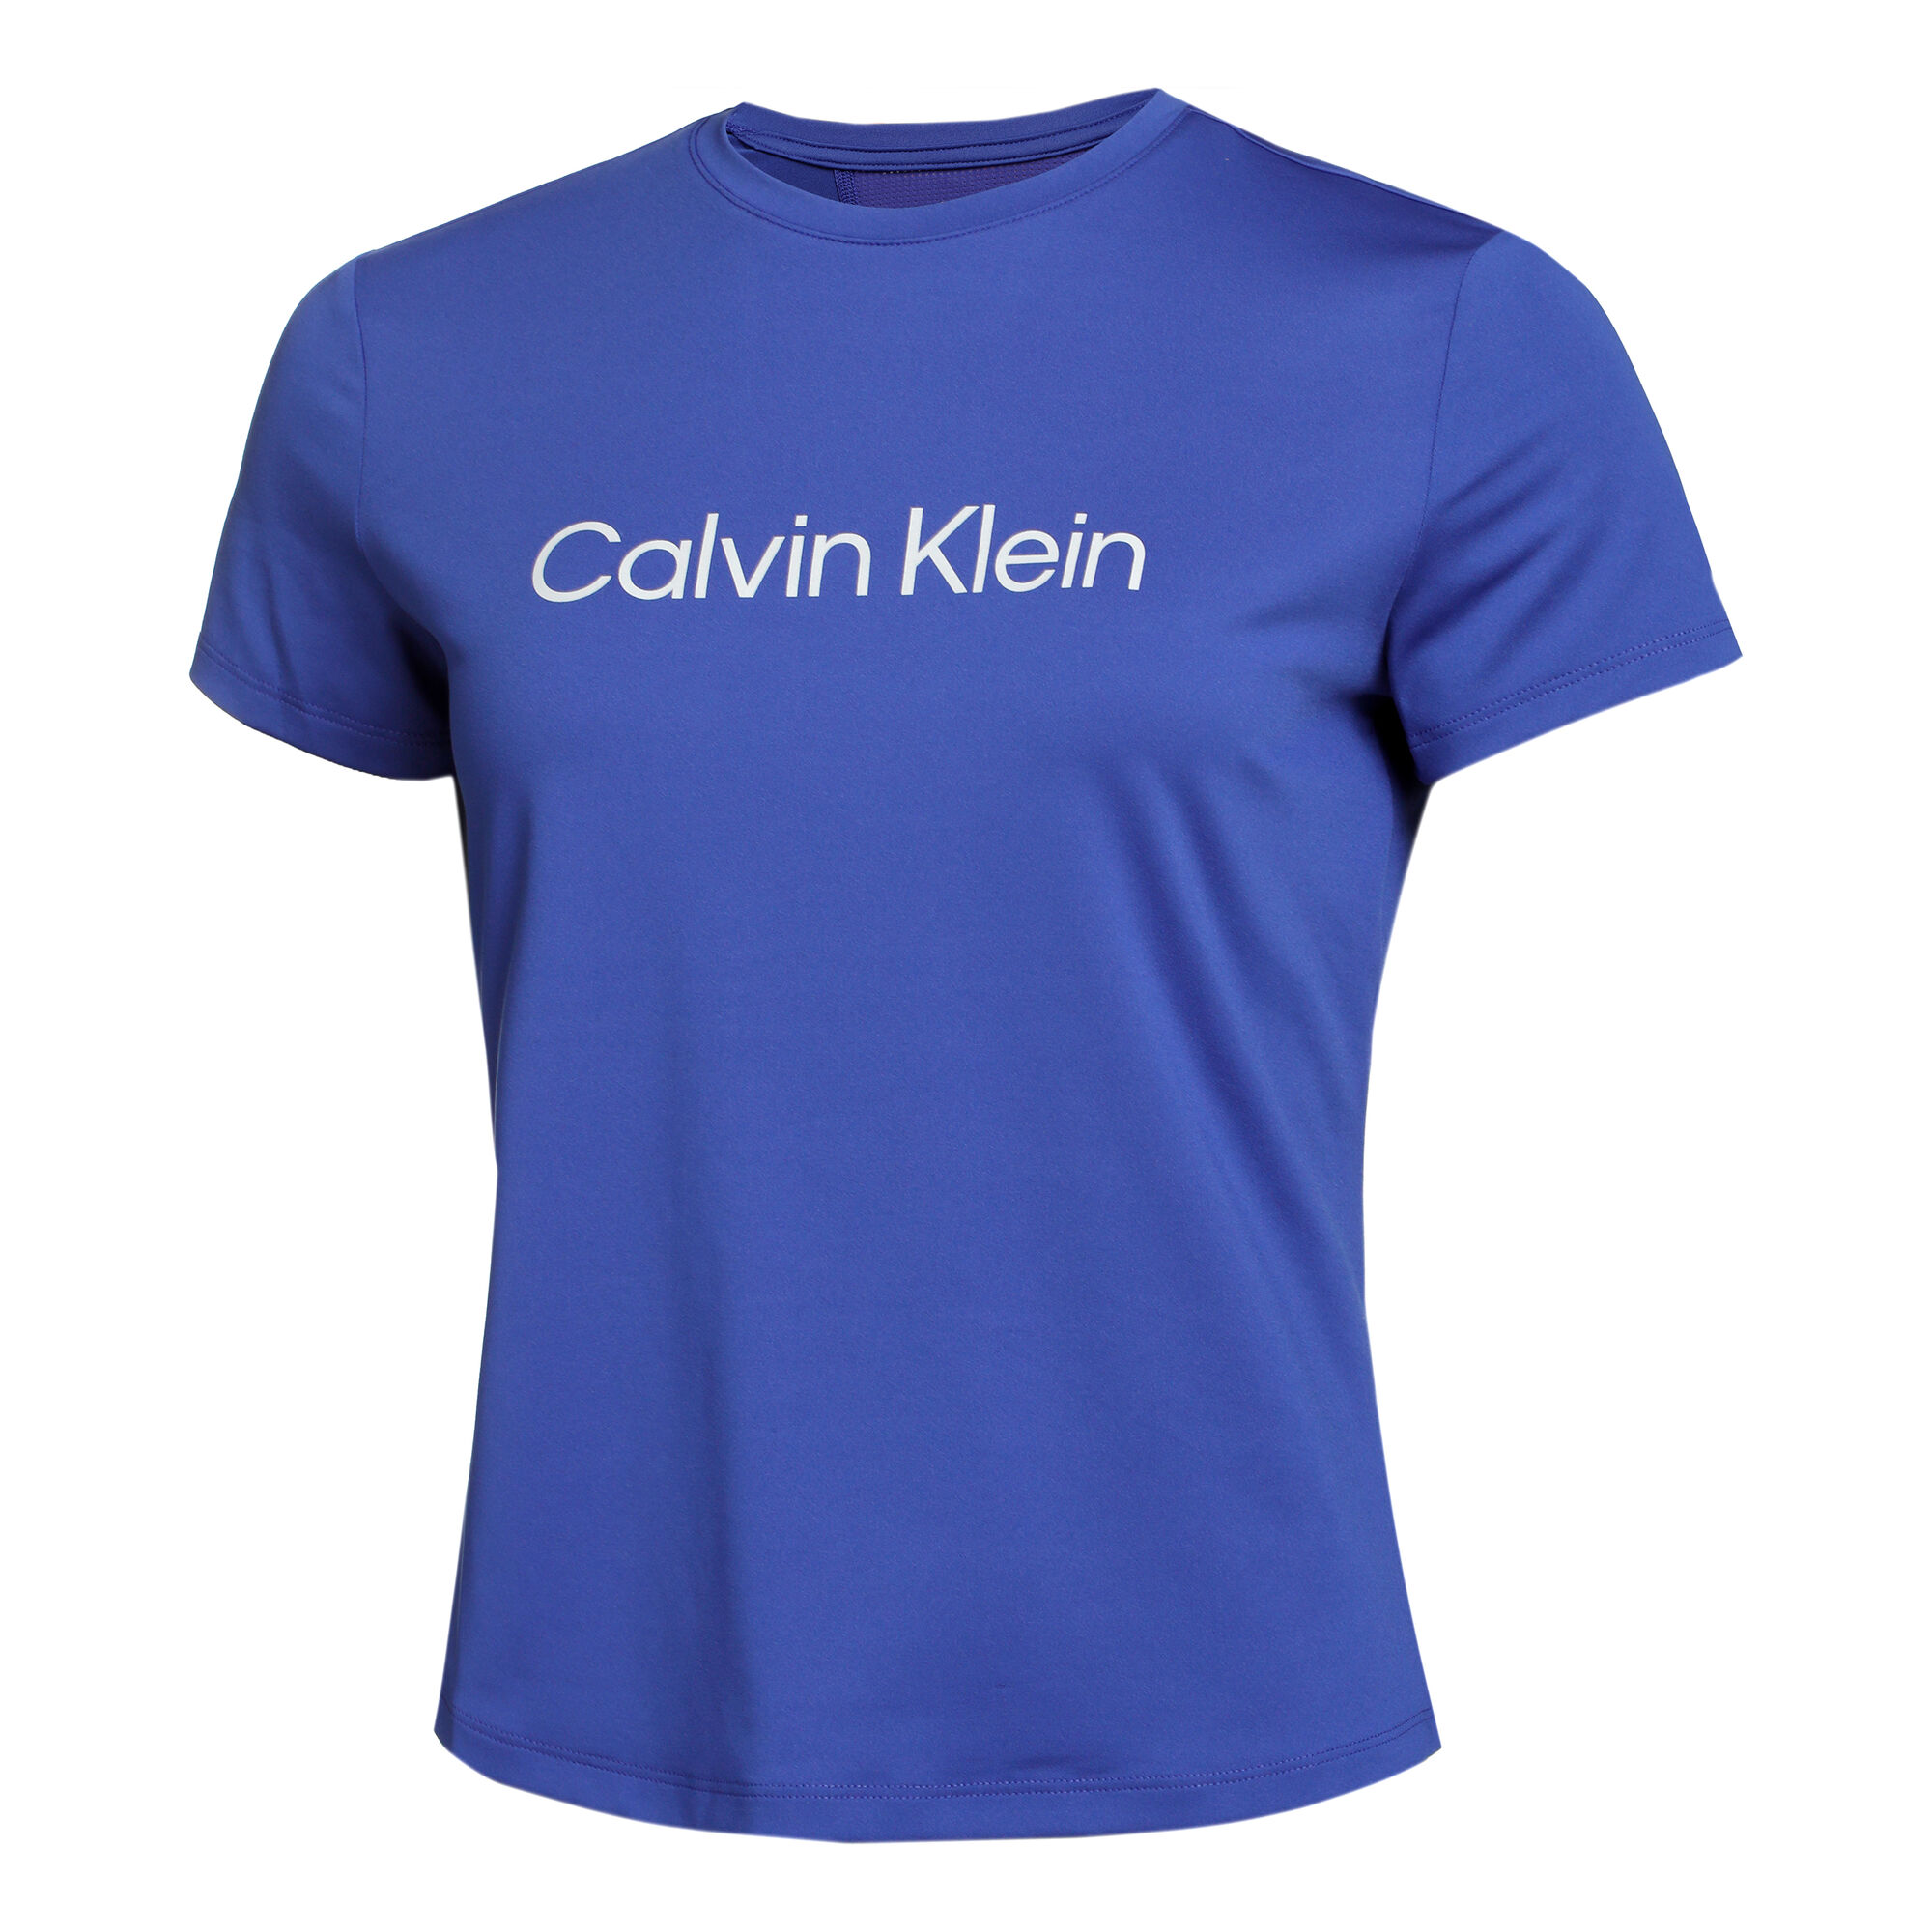 | T-Shirt AT Damen Klein Calvin kaufen Blau online Tennis Point